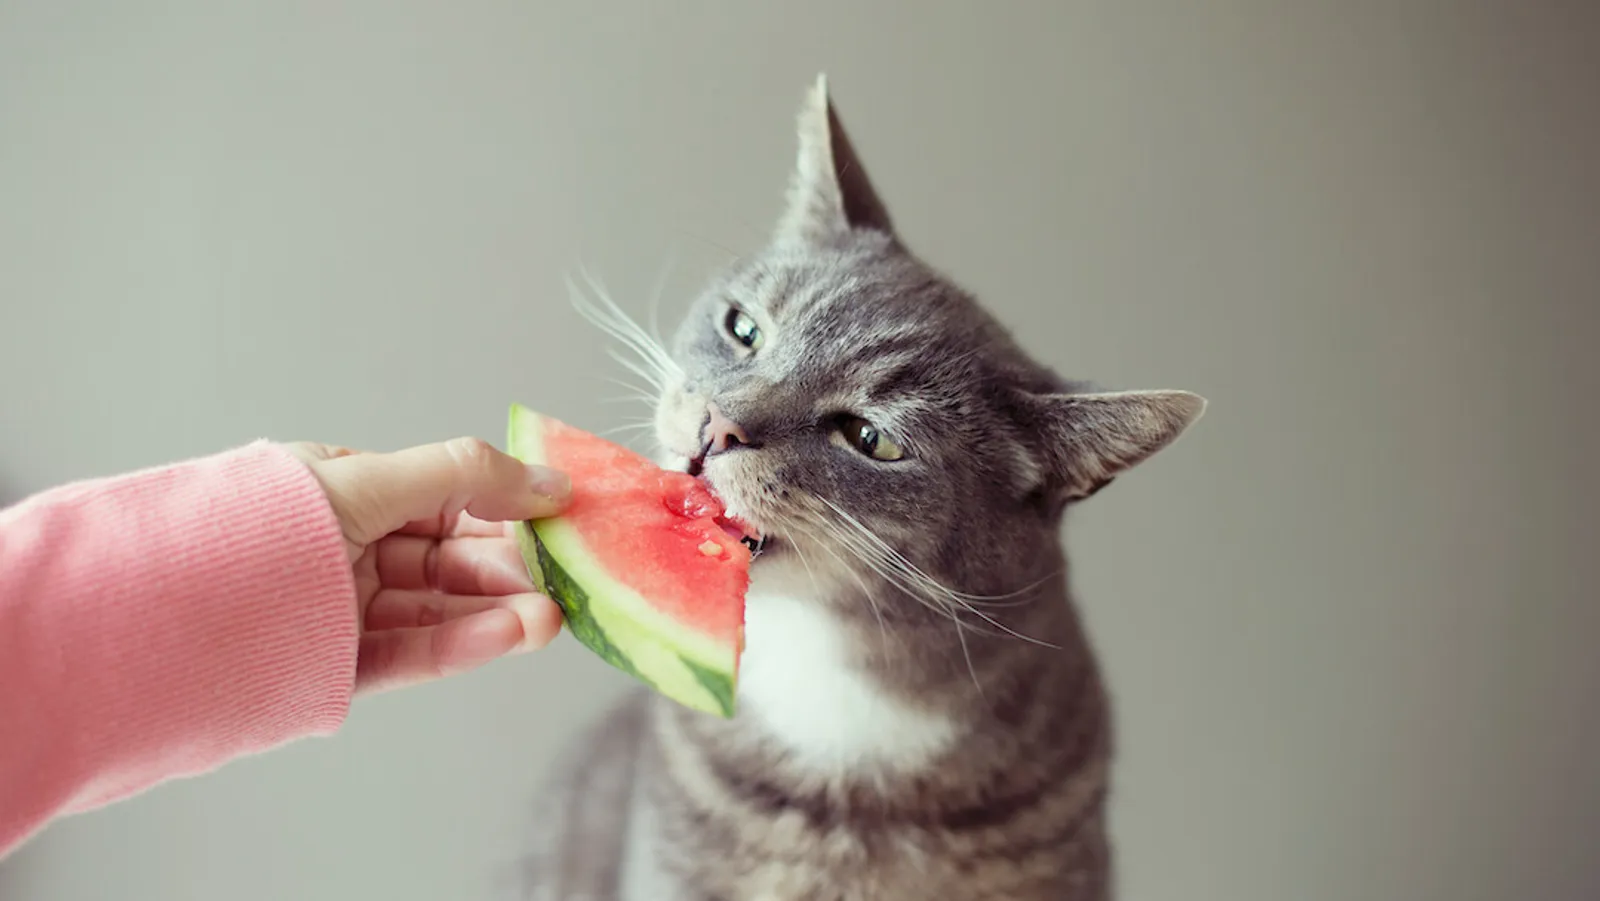 Merupakan Hewan Karnivora, Bolehkah Kucing Makan Buah?